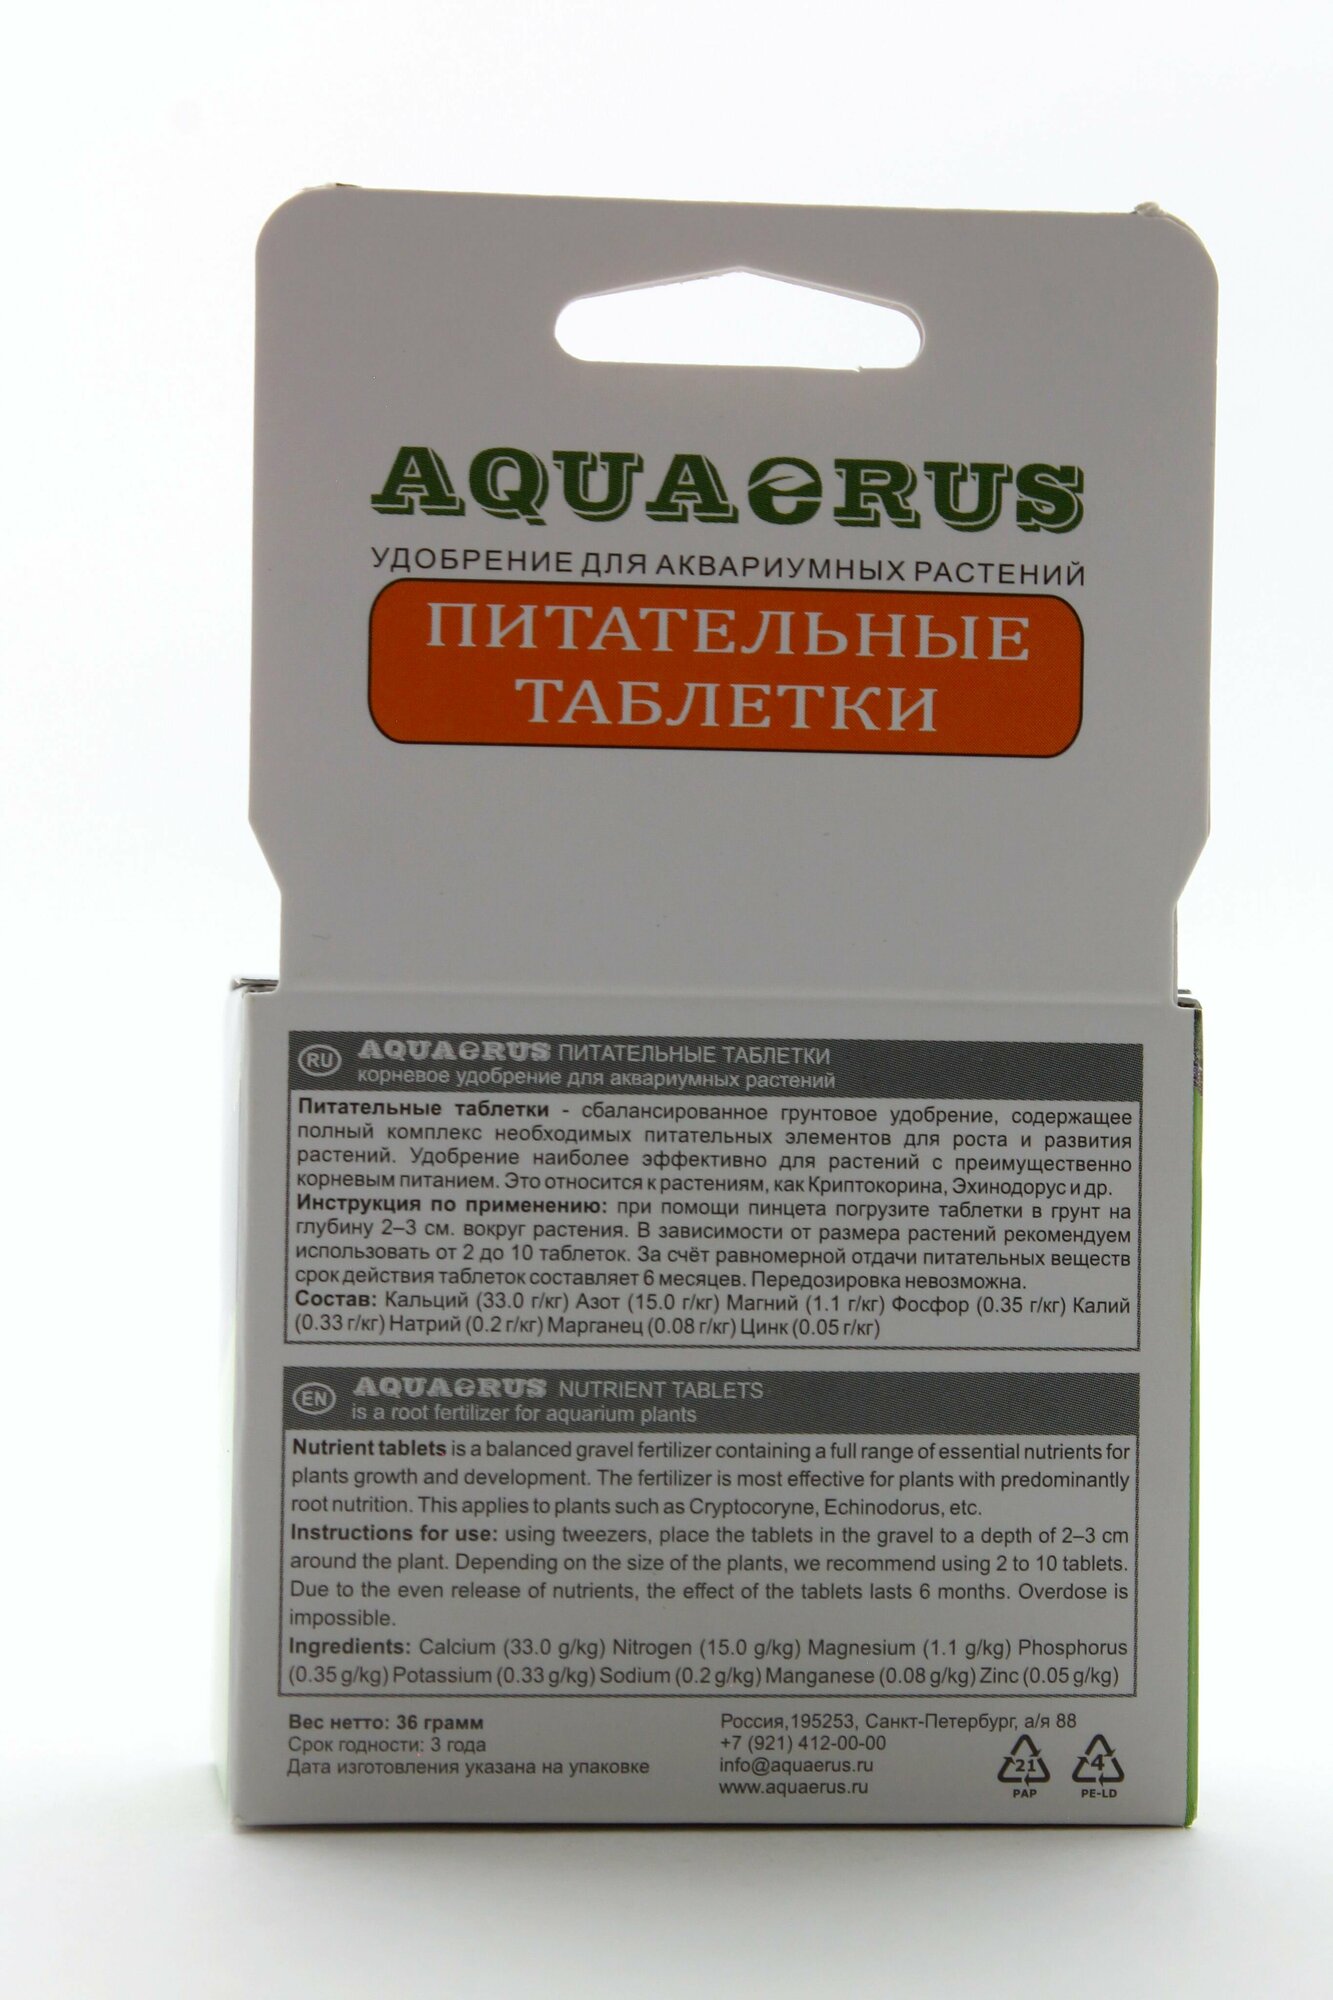 AQUAERUS Питательные таблетки 100 шт